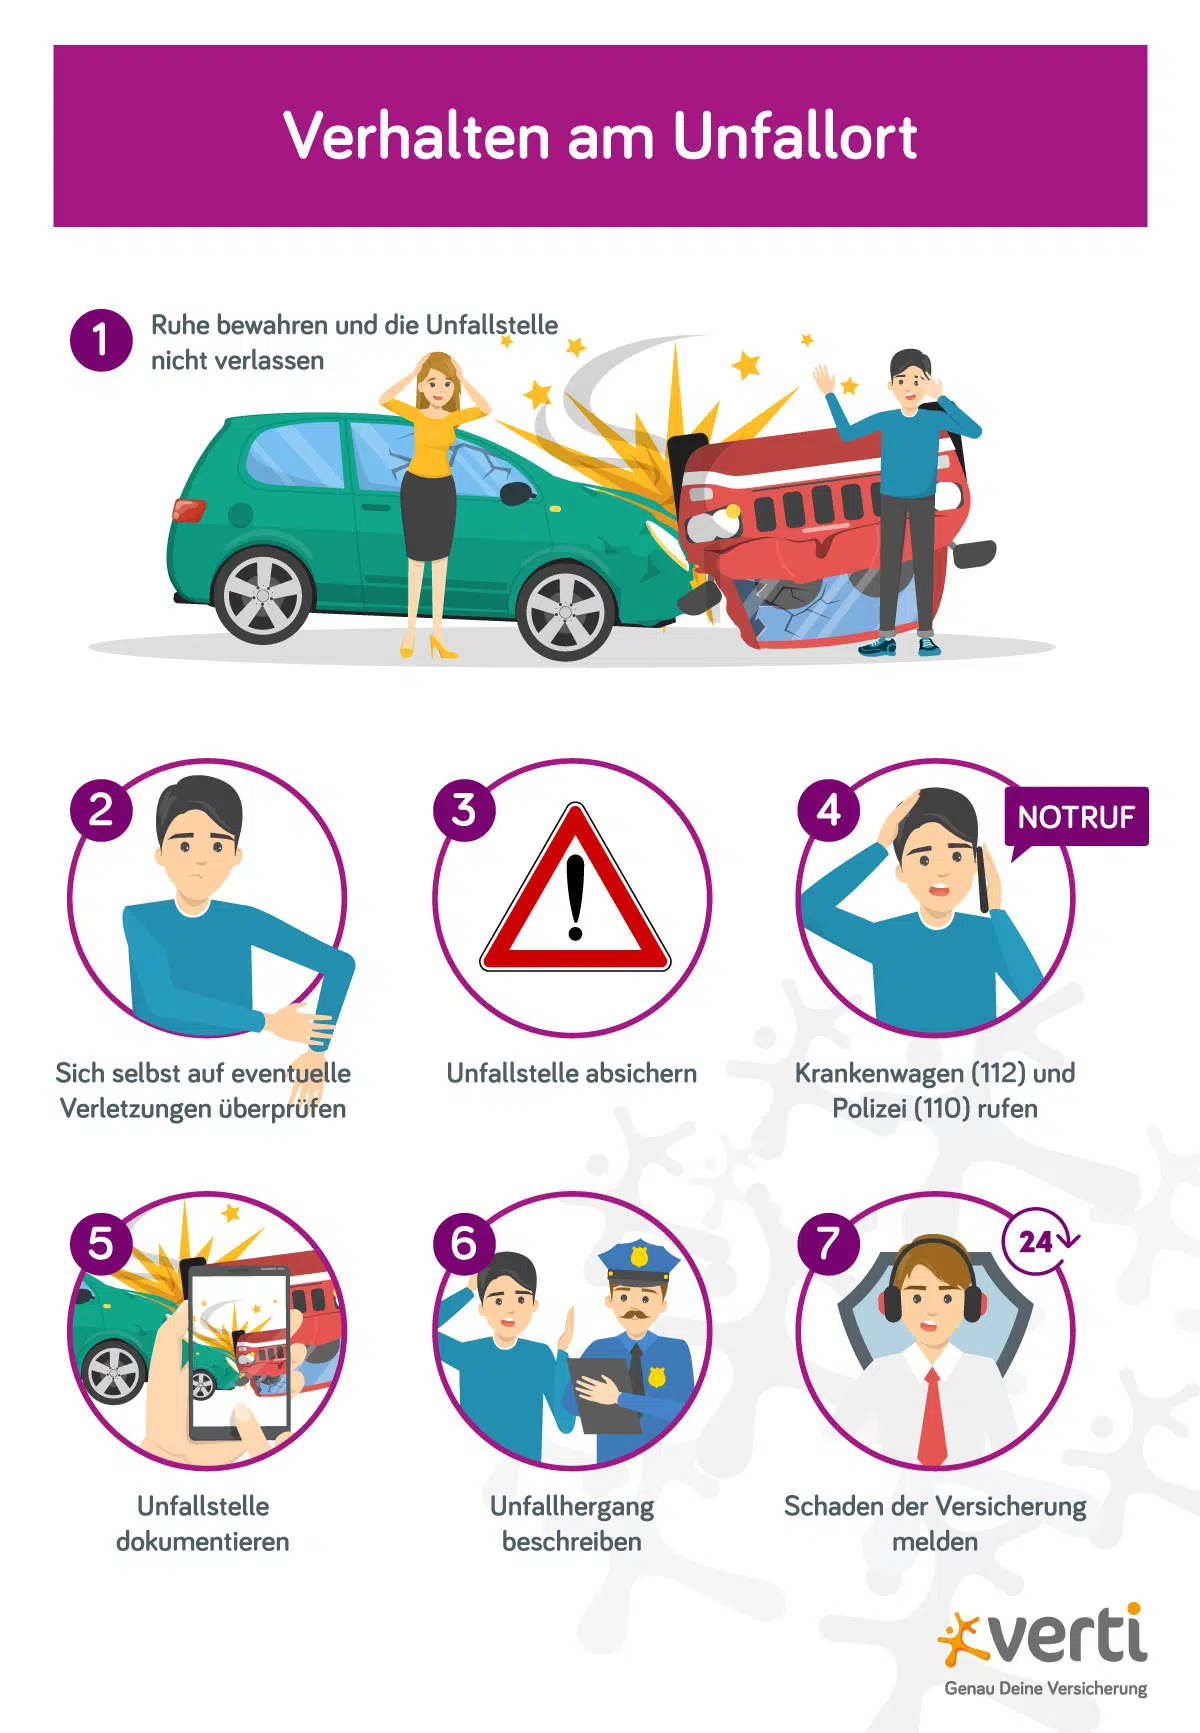 Vorgehen nach einem Autounfall: Vom Absichern der Unfallstelle bis zur Verständigung der Versicherung